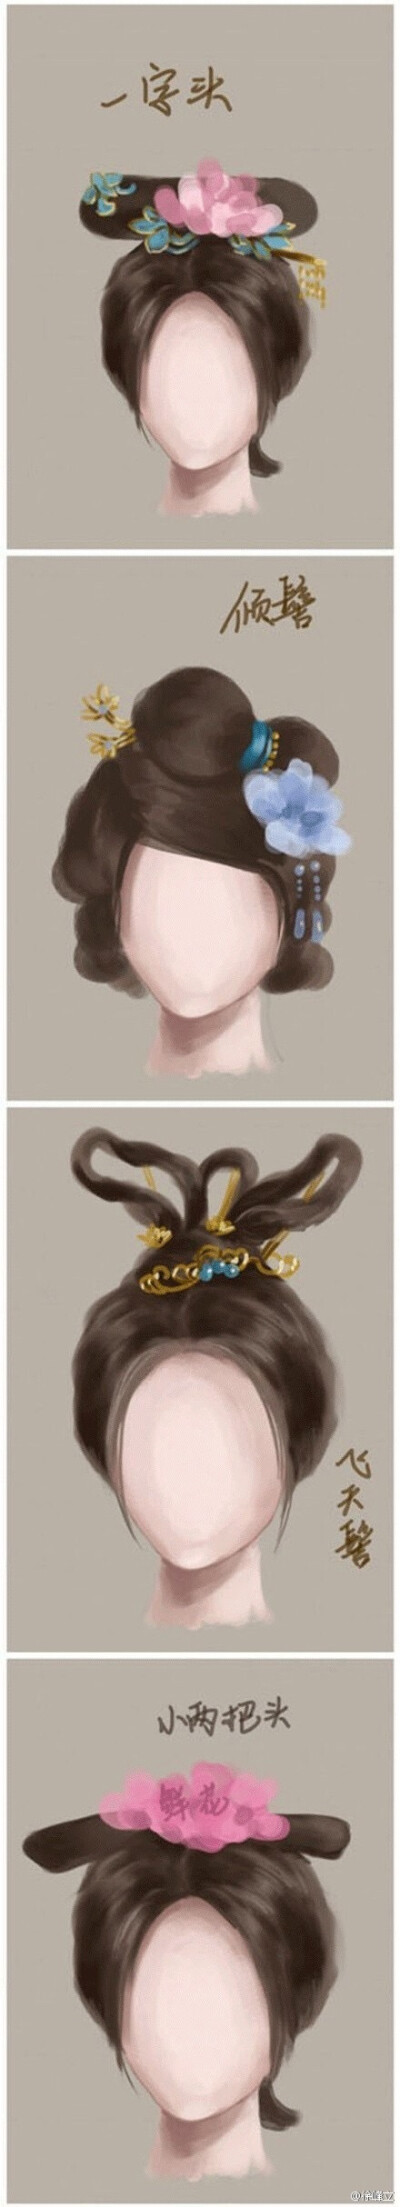 古代女子的发型合集